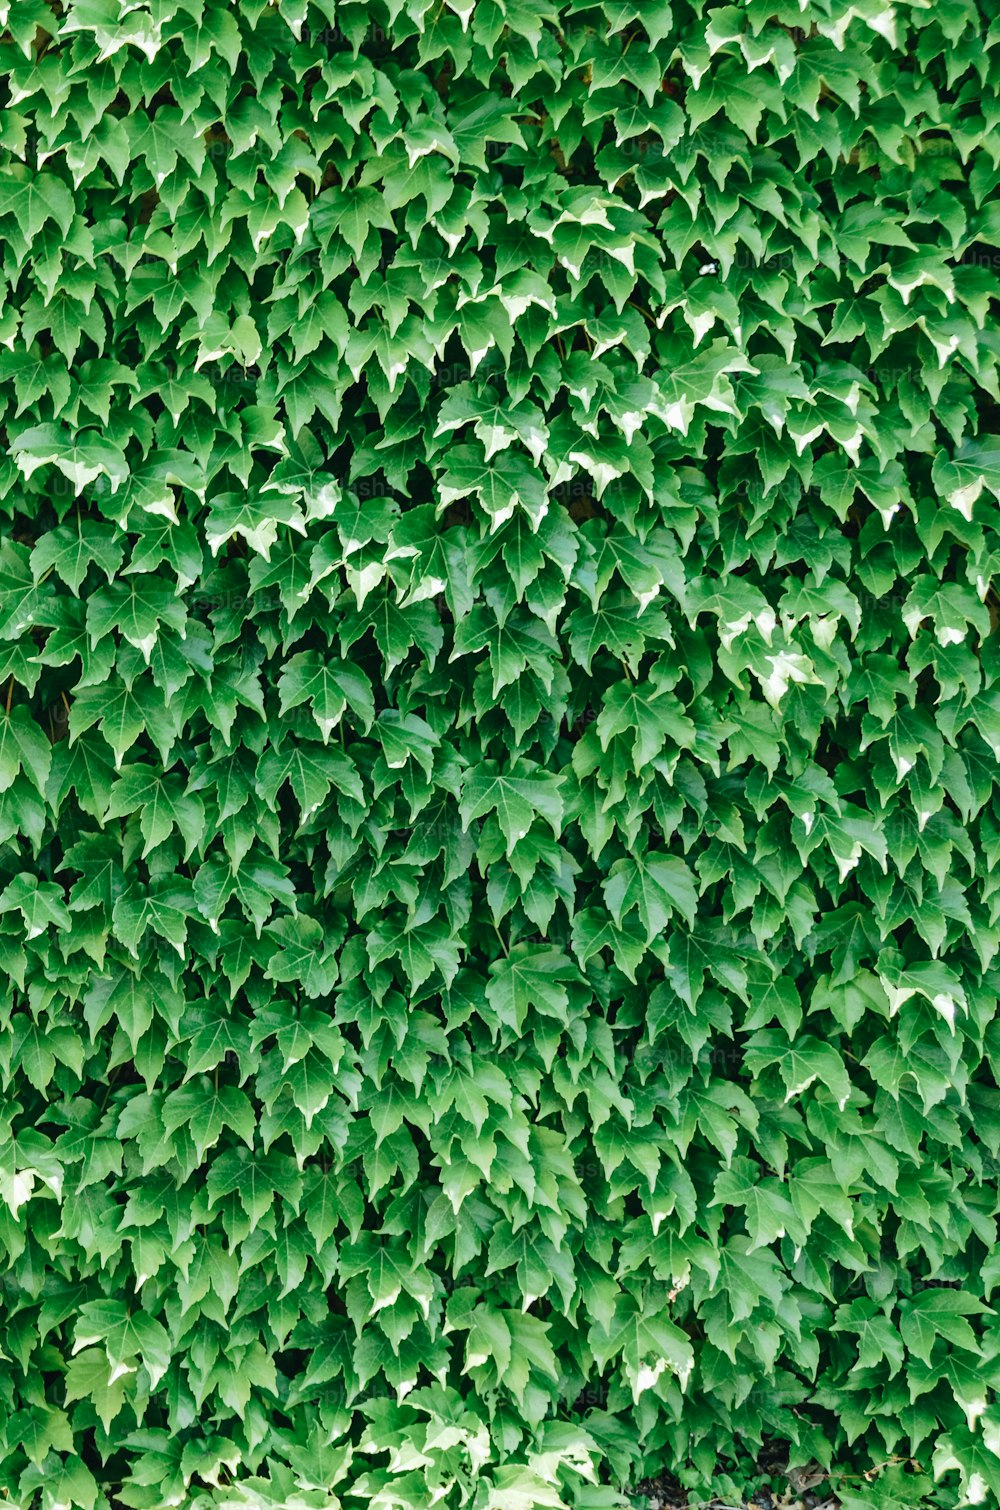 たくさんの葉で覆われた緑の壁